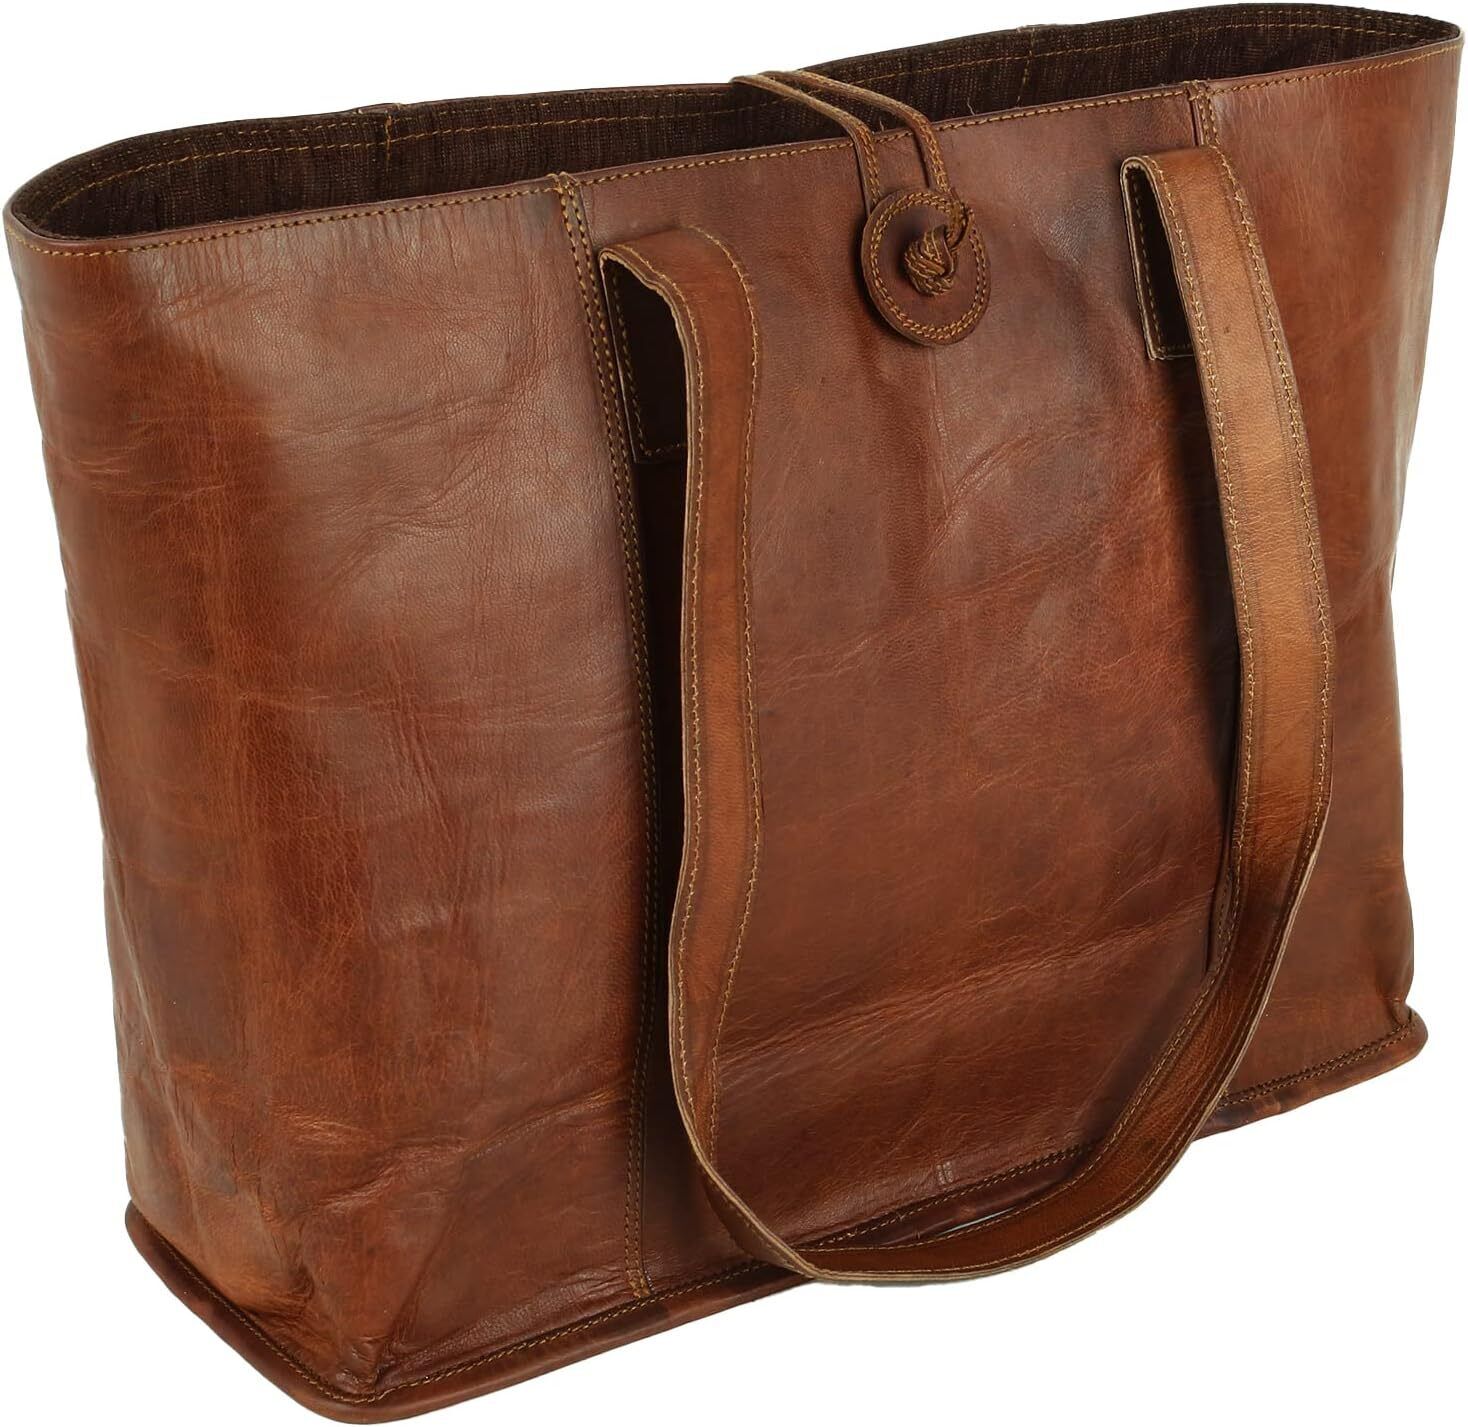 Vintage Genuine Leather Tote Bag Handbag Shopper Purse Shoulder for... 